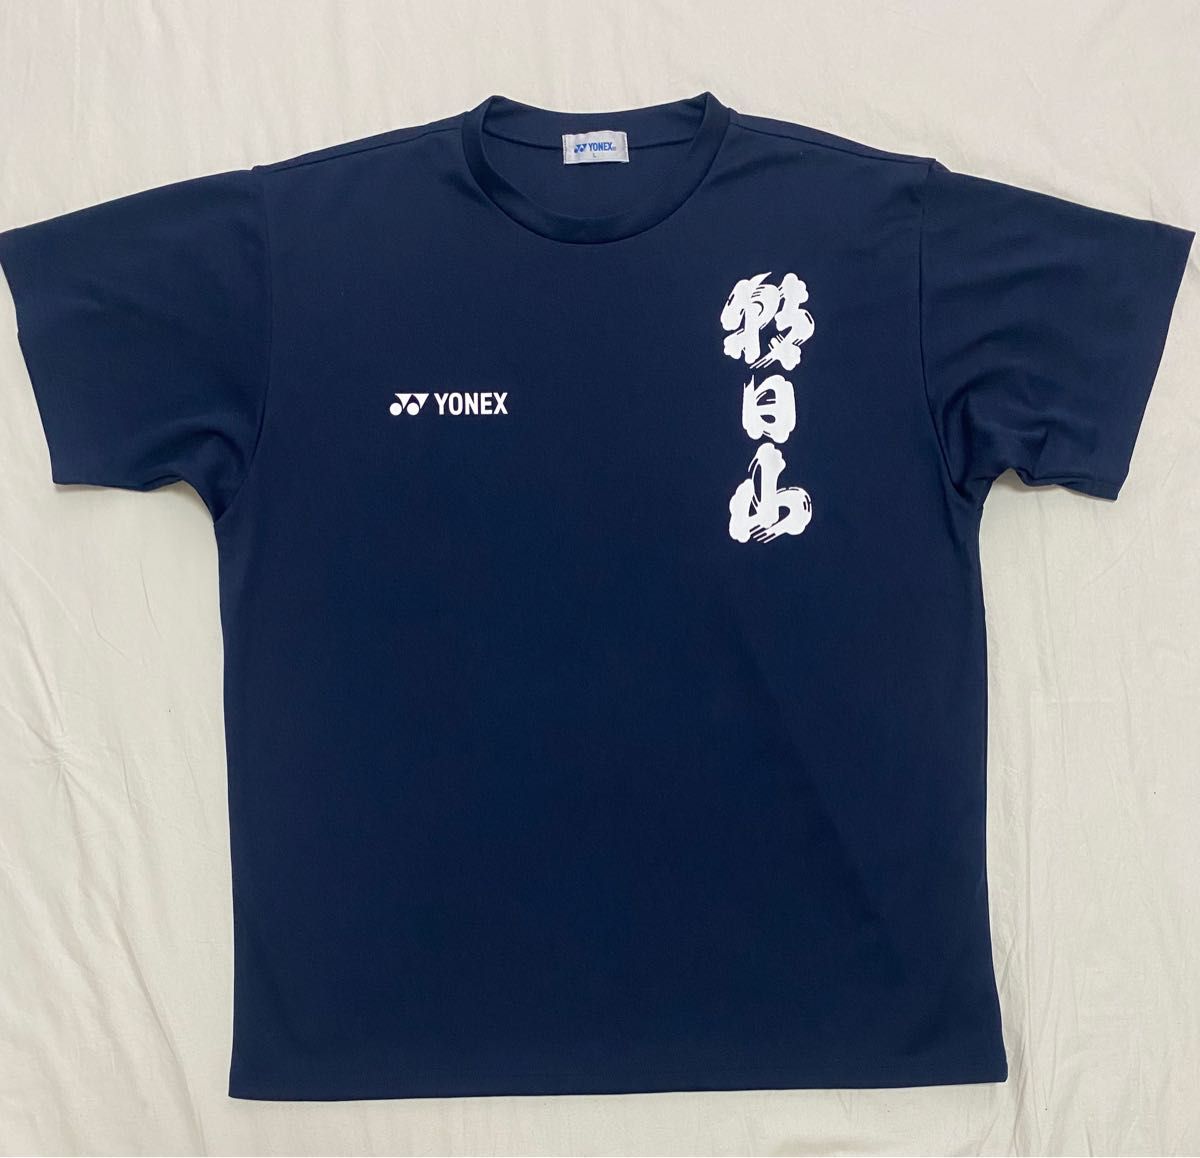 YONEX ヨネックス 新潟 朝日酒造 朝日山 Tシャツ ネイビー Lサイズ